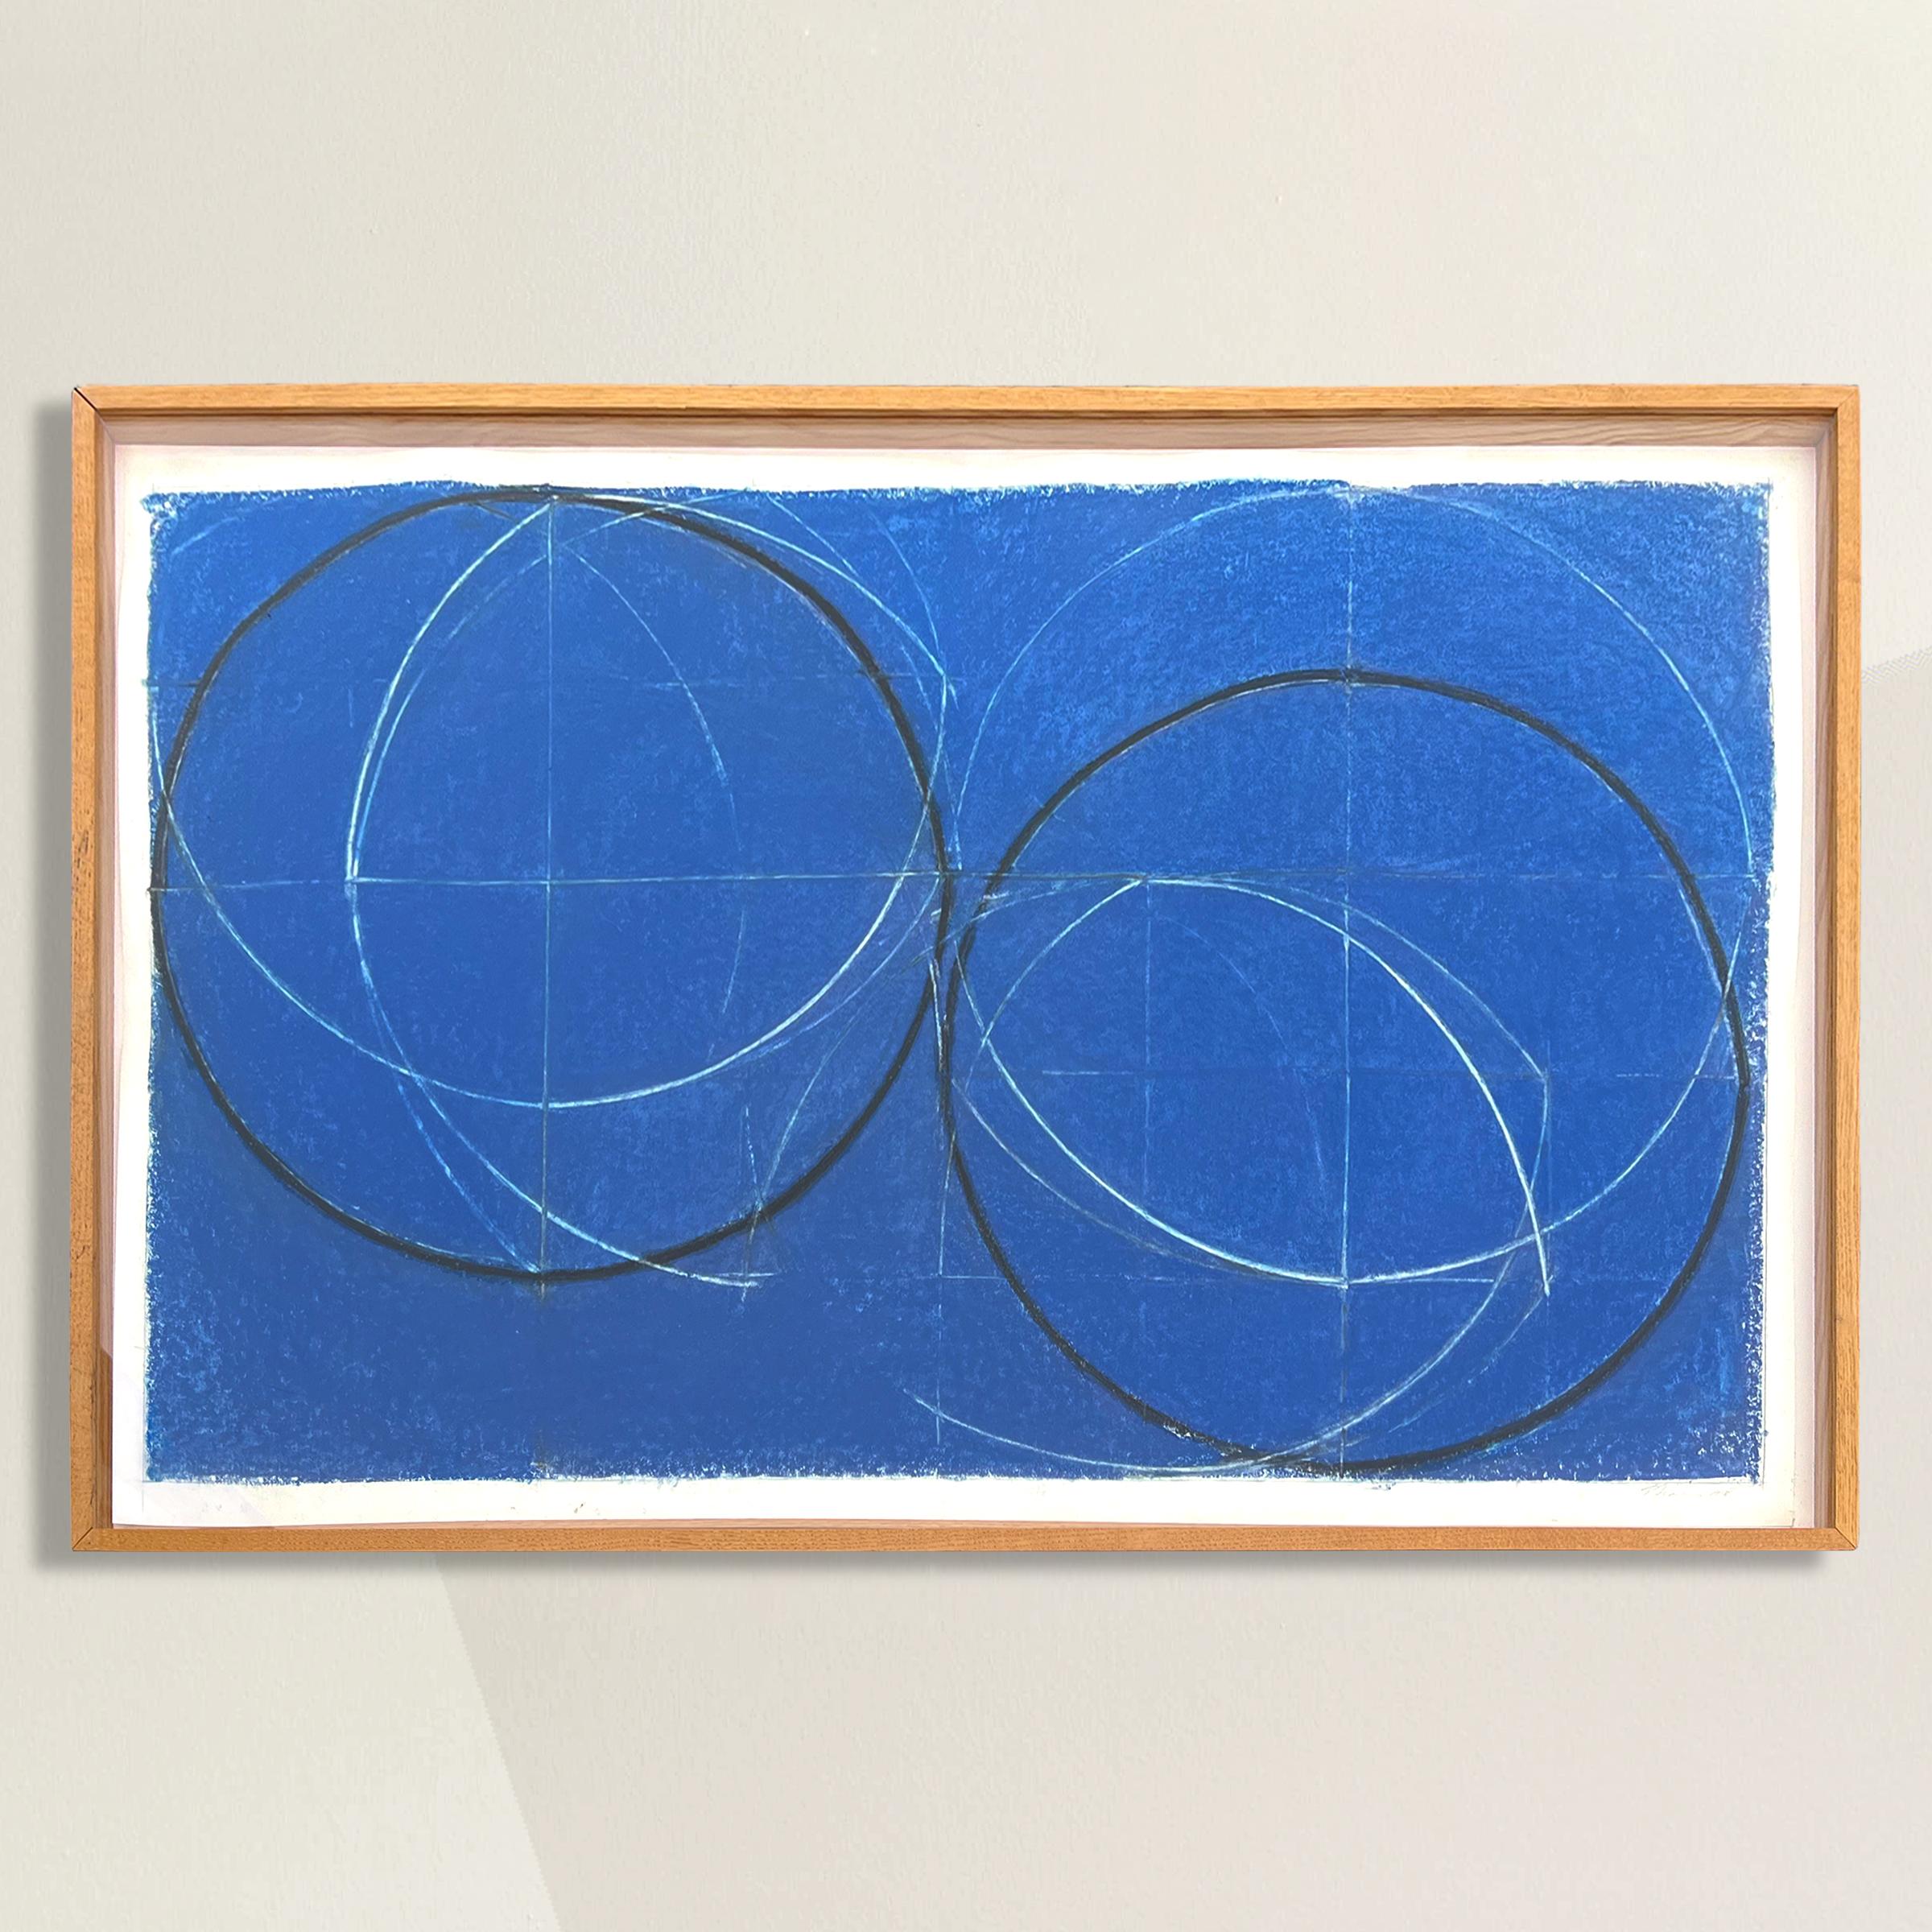 Un dibujo geométrico minimalista americano, elegante e impactante, con dos grandes círculos de carbón, varios círculos blancos entrelazados y un atrevido fondo azul cobalto pastel. Enmarcado en un marco de galería de roble personalizado. Firmado y